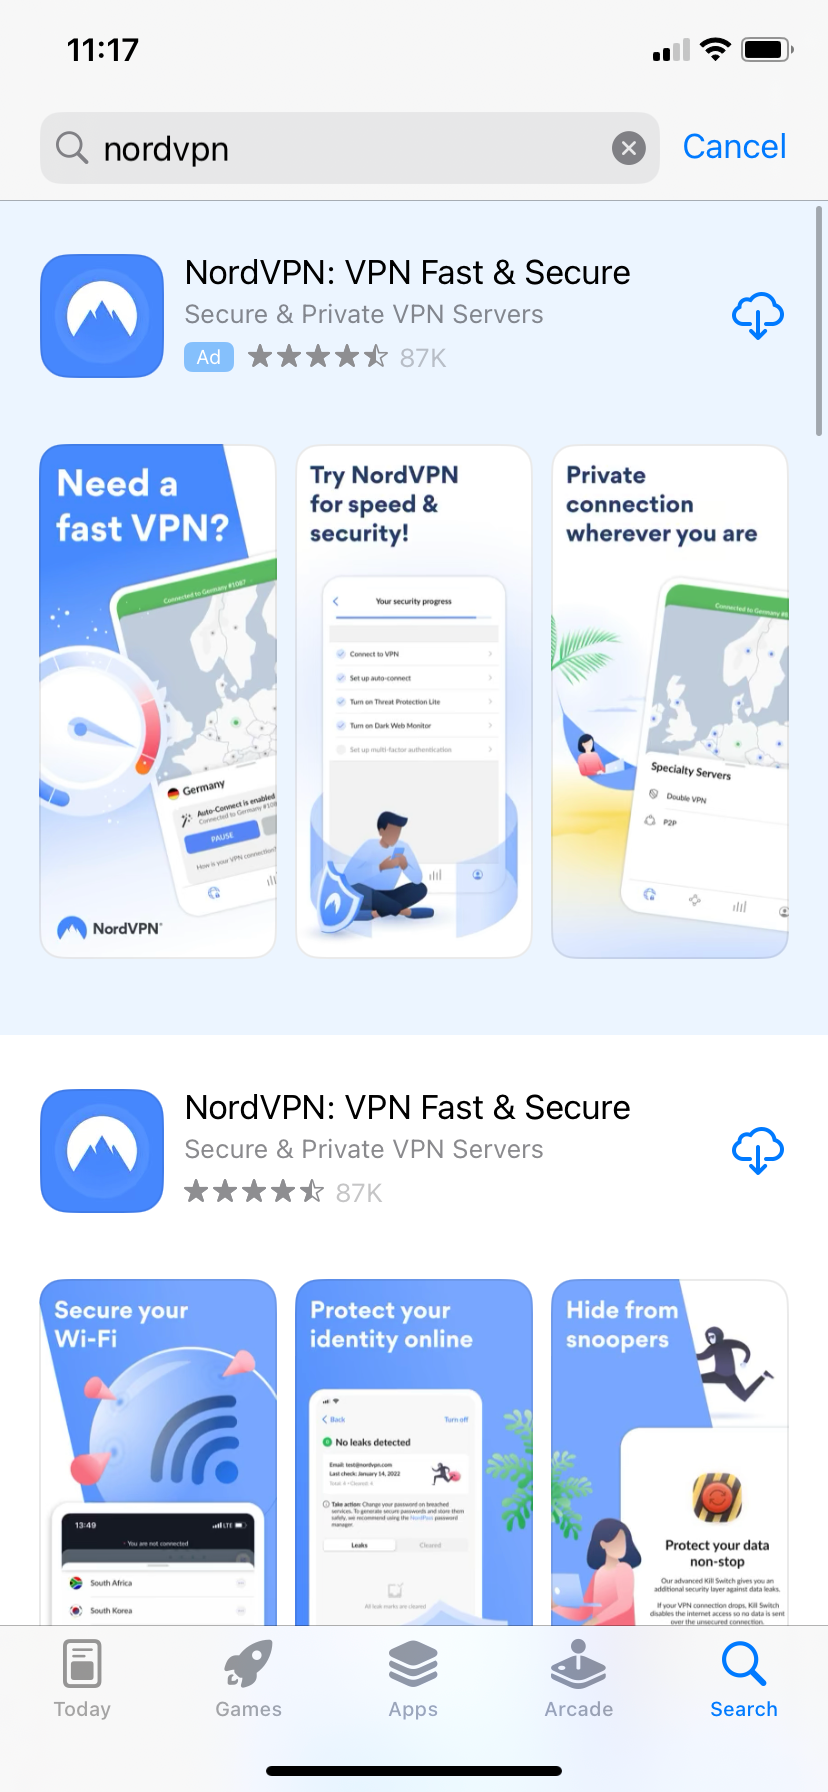 So fügen Sie ein VPN zum iPhone hinzu